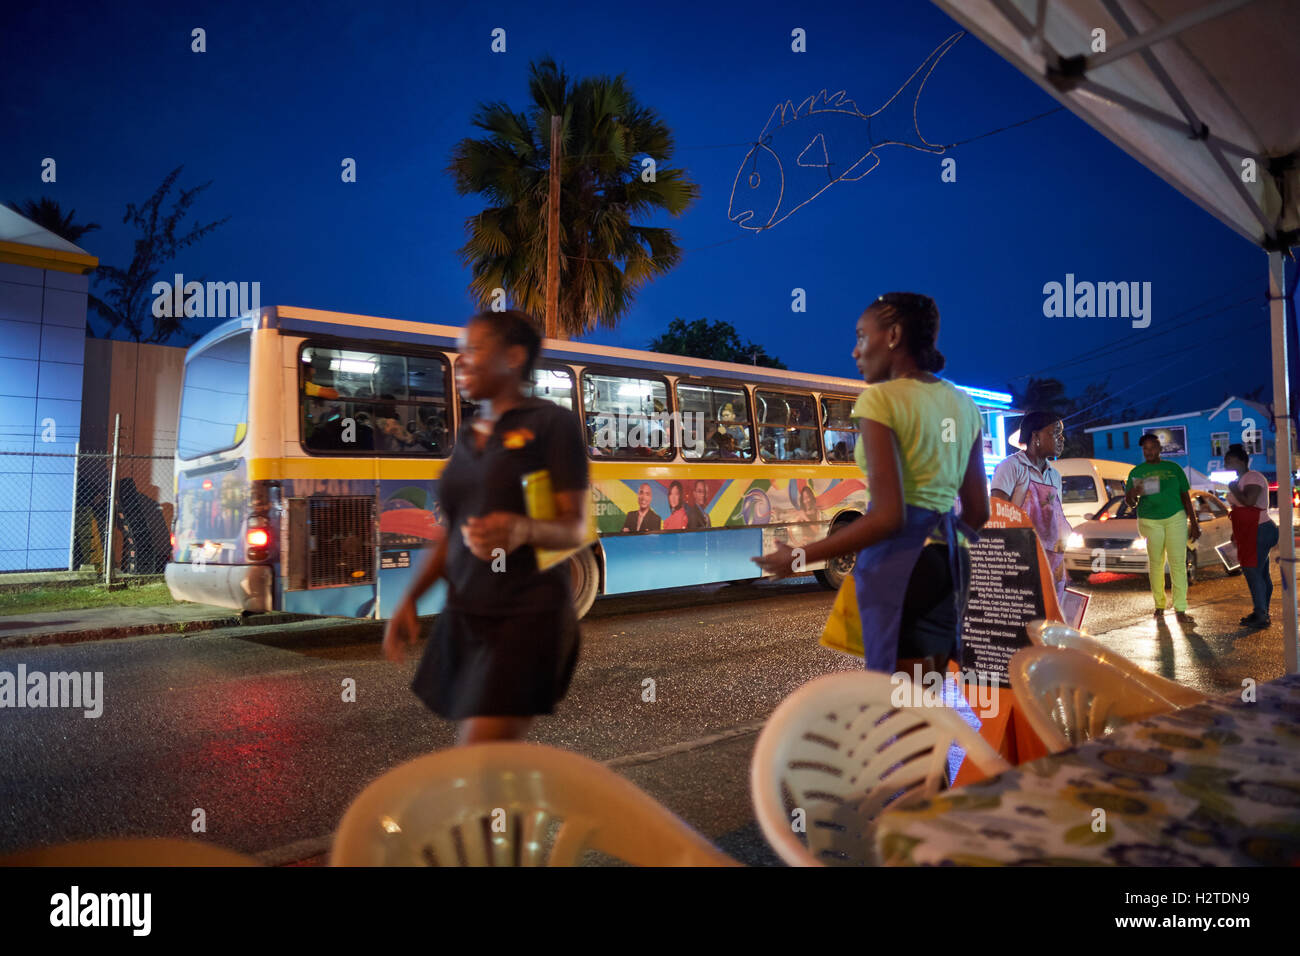 Barbados trasporto bus scheda città costiera parrocchia la Chiesa di Cristo di governo servizio giallo blu strada trafficata trasporti transporter Foto Stock